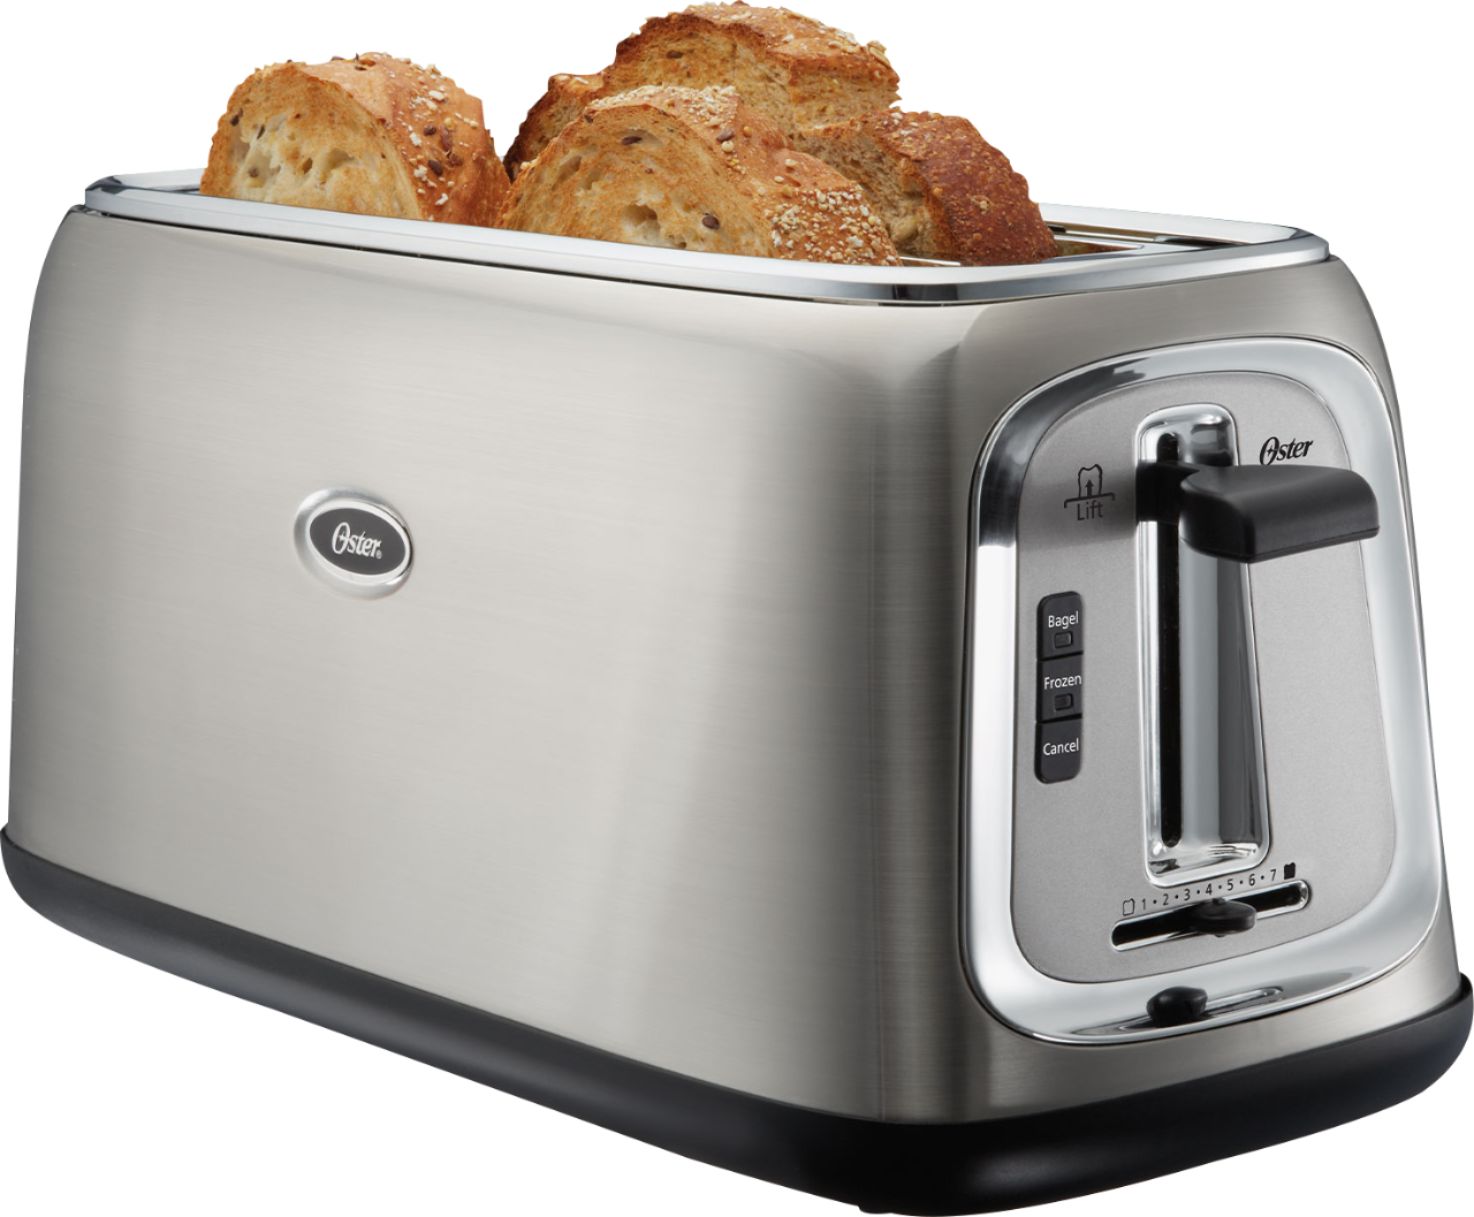 Best Buy: Oster 4-Slice Wide-Slot Toaster Stainless Steel TSSTTRJB30 Oster 4 Slice Stainless Steel Toaster